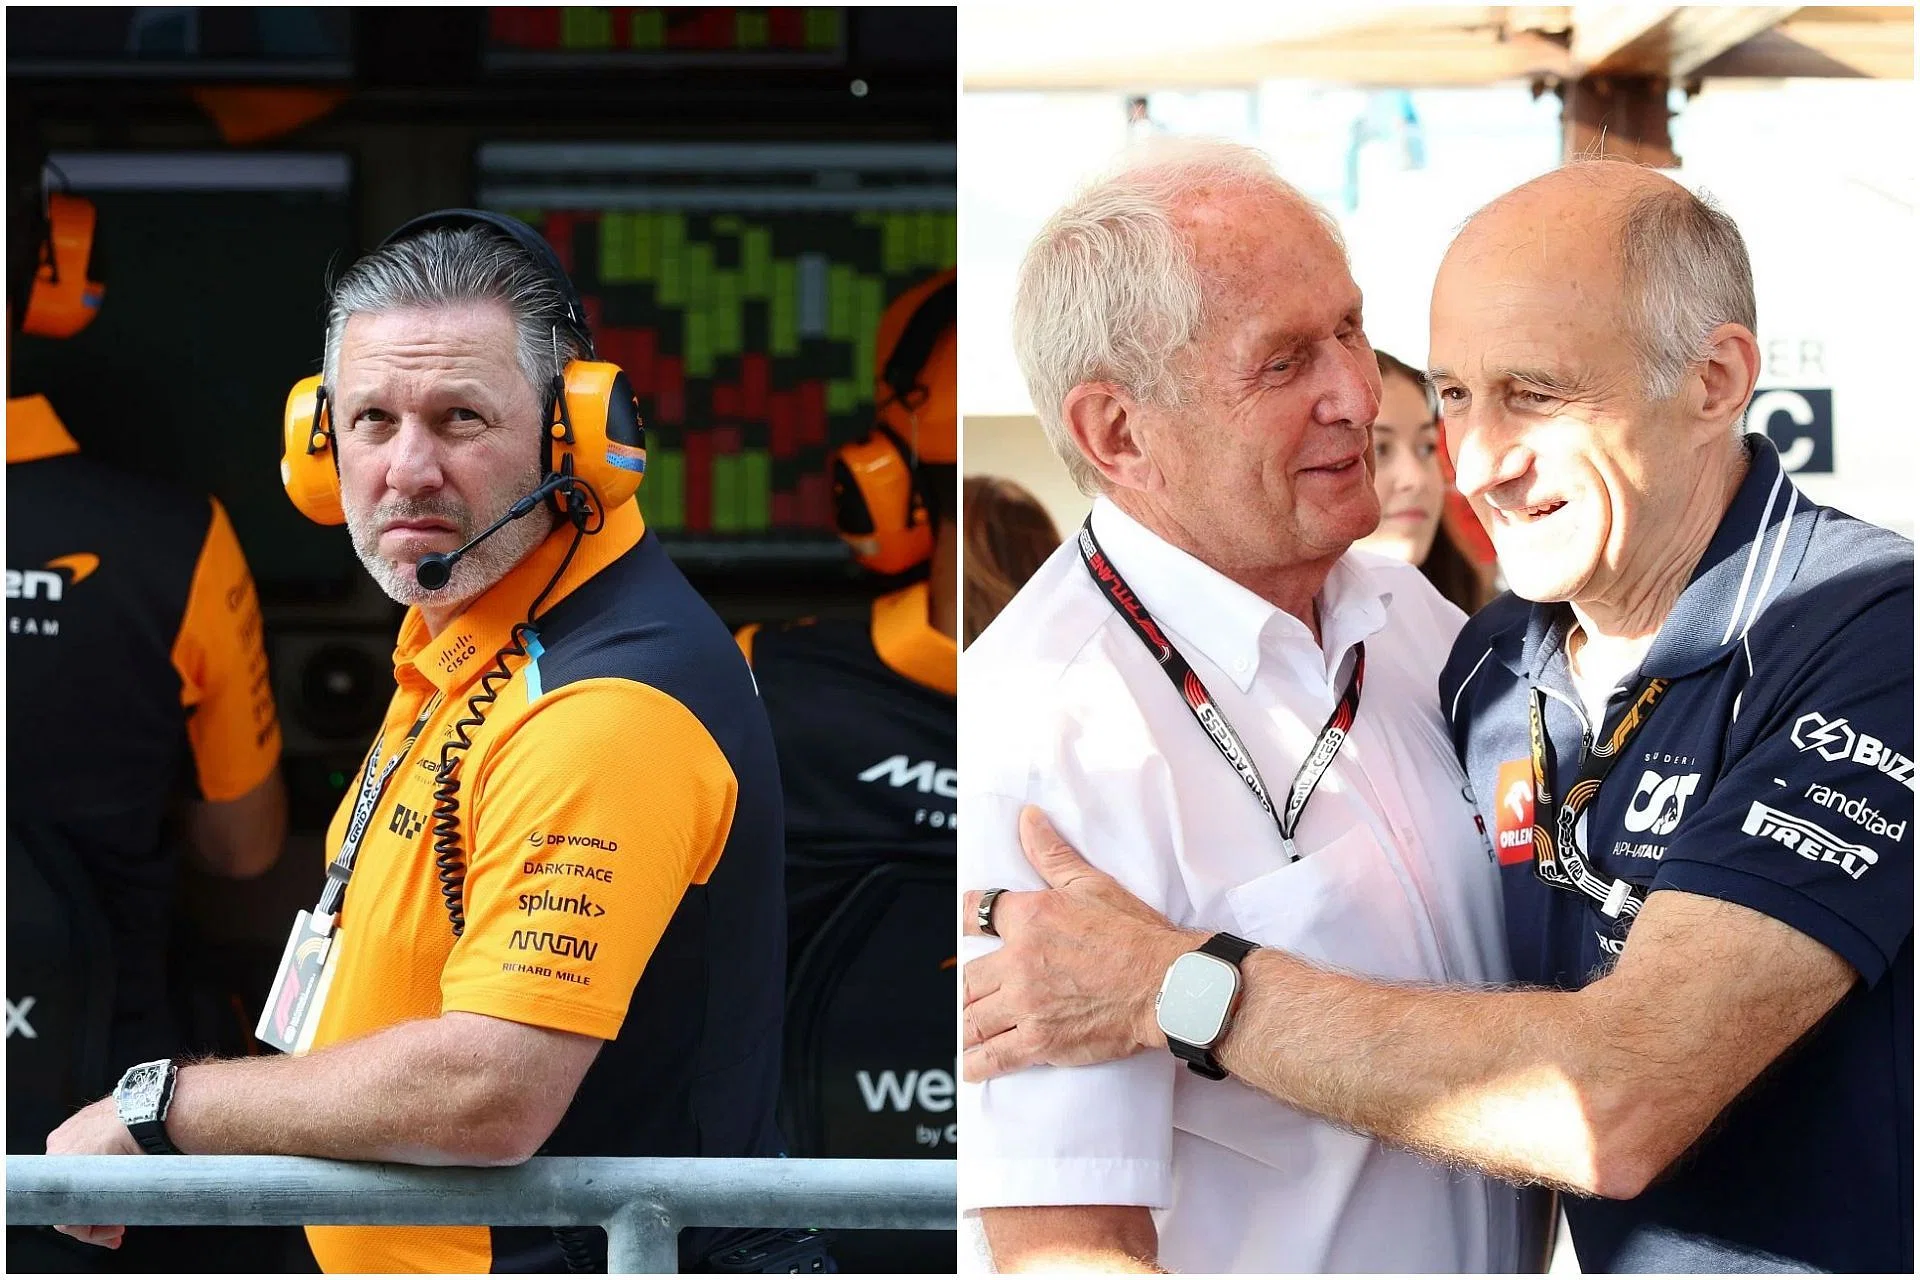 «Спорт теперь перешёл на равные условия для всех», - руководитель «McLaren» Зак Браун усиливает свои возражения против наличия у «Red Bull» двух команд в «Формуле-1».